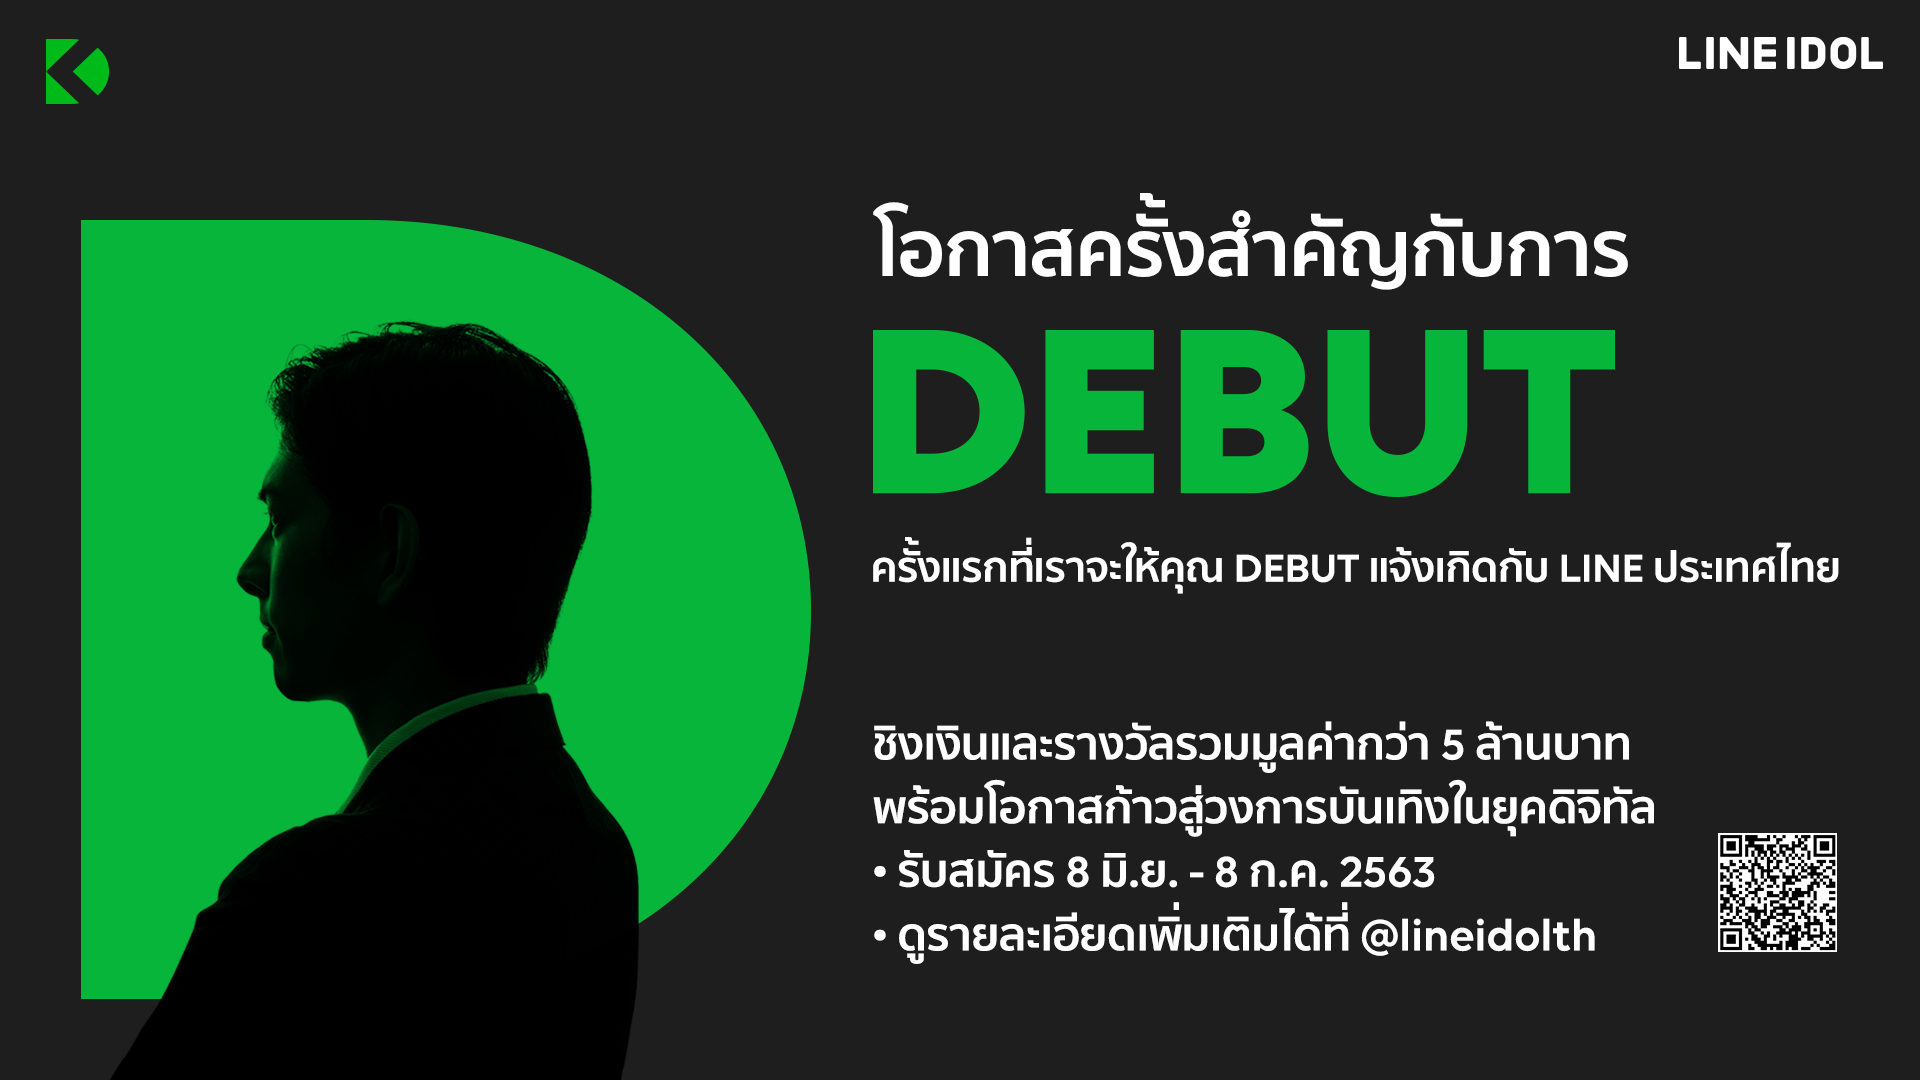 LINE ประเทศไทยผุด “DEBUT” โปรเจ็คยักษ์แห่งปี เดินหน้าปั้นไอดอลยุคดิจิทัล ชิงเงินและรางวัลมูลค่ากว่า 5 ล้านบาท